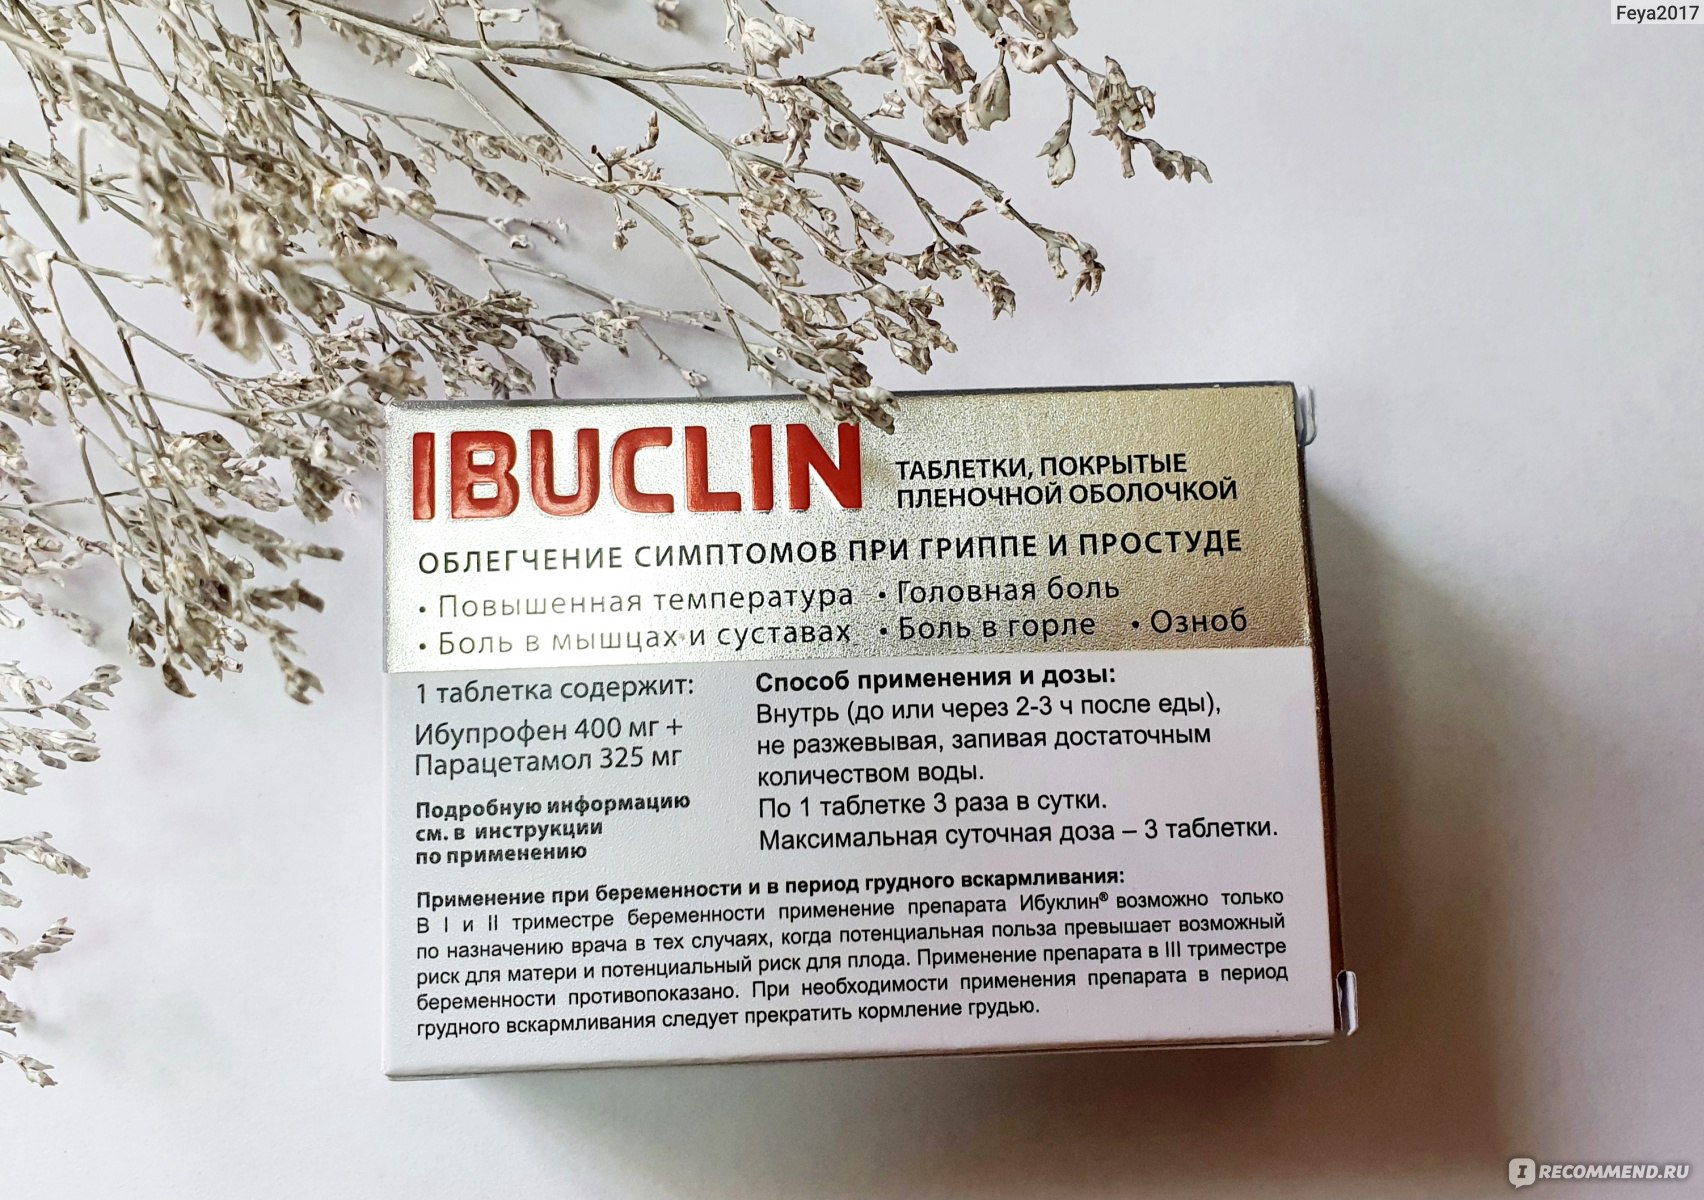 Сколько раз пьют ибуклин. Ибуклин таблетки взрослым. Таблетки от головной боли ибуклин. Ибуклин таблетки покрытые пленочной оболочкой. Ибуклин для головной боли таблетки.